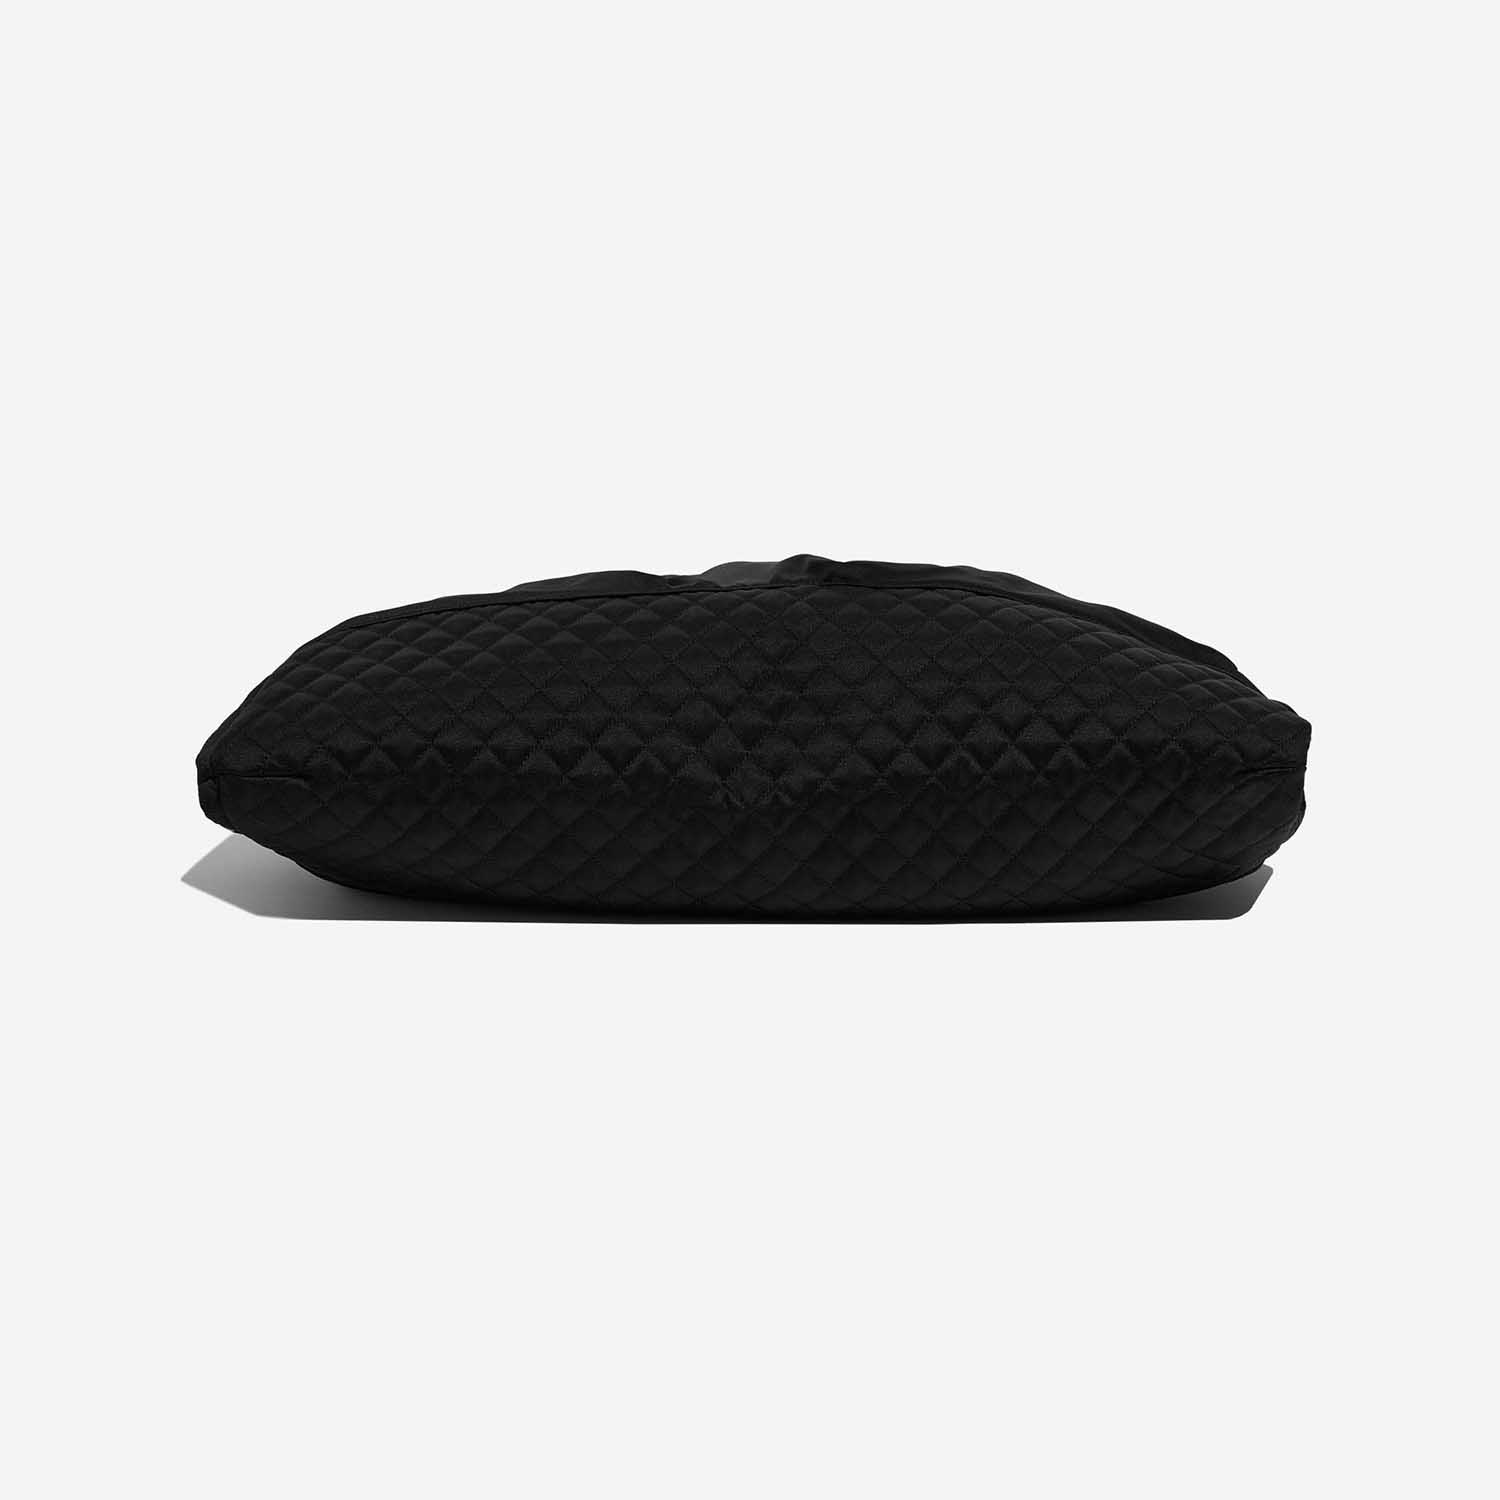 Pre-owned Chanel bag Drawstring Large Satin Black Black Bottom | Sell your designer bag on Saclab.com